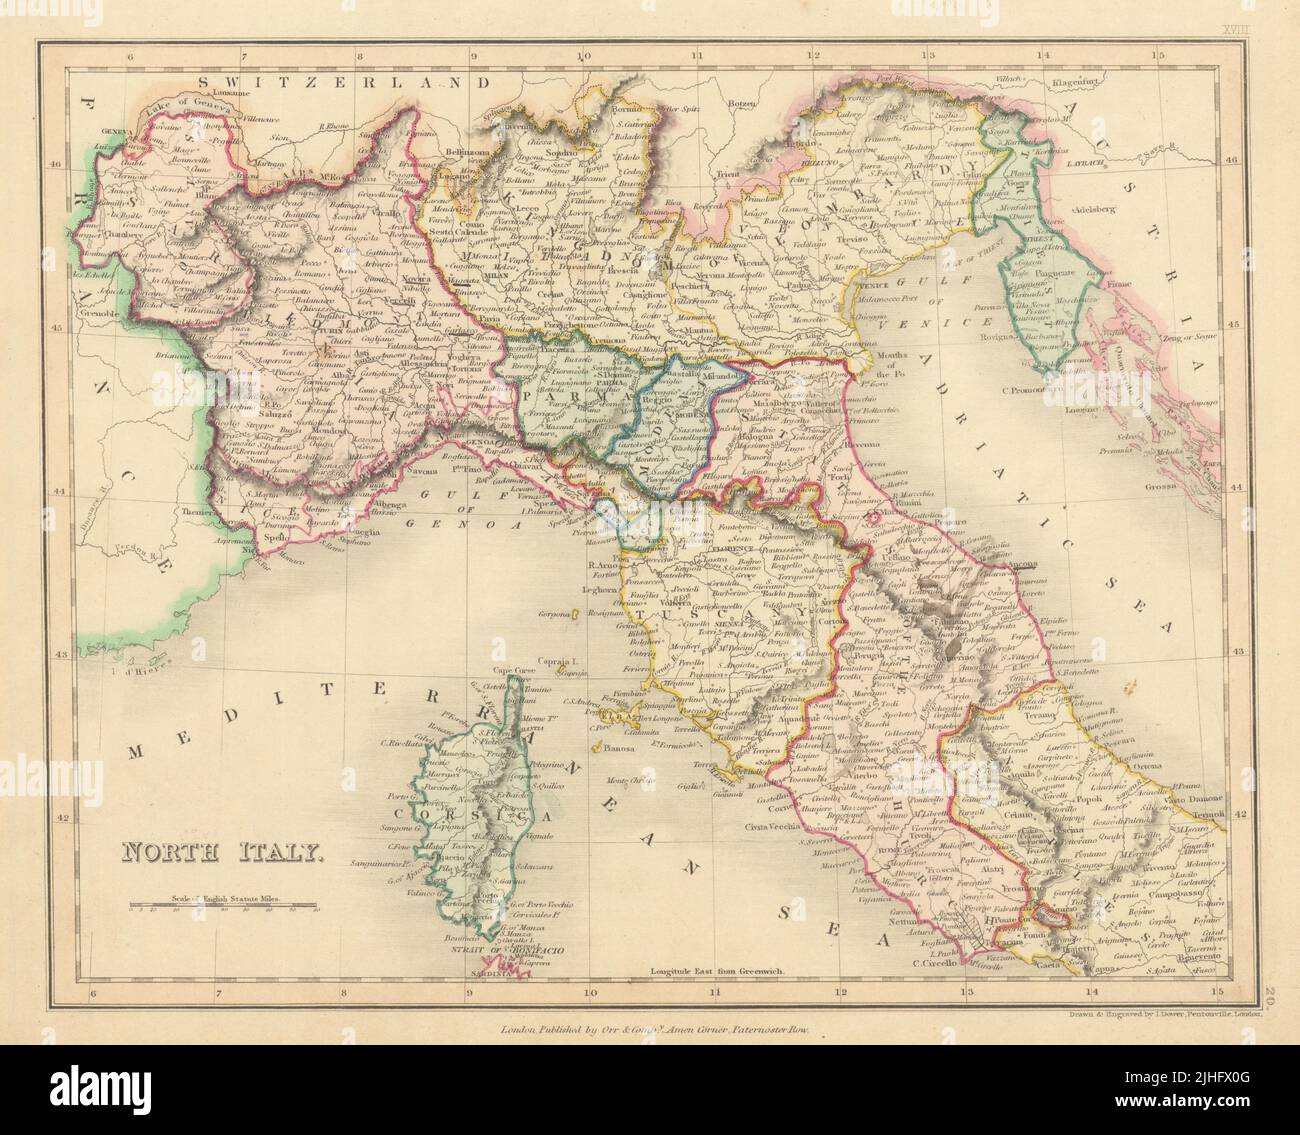 Italie du Nord avec Savoie, Istrie et Alpes-Maritimes. Etats papal. Carte DOWER 1845 Banque D'Images